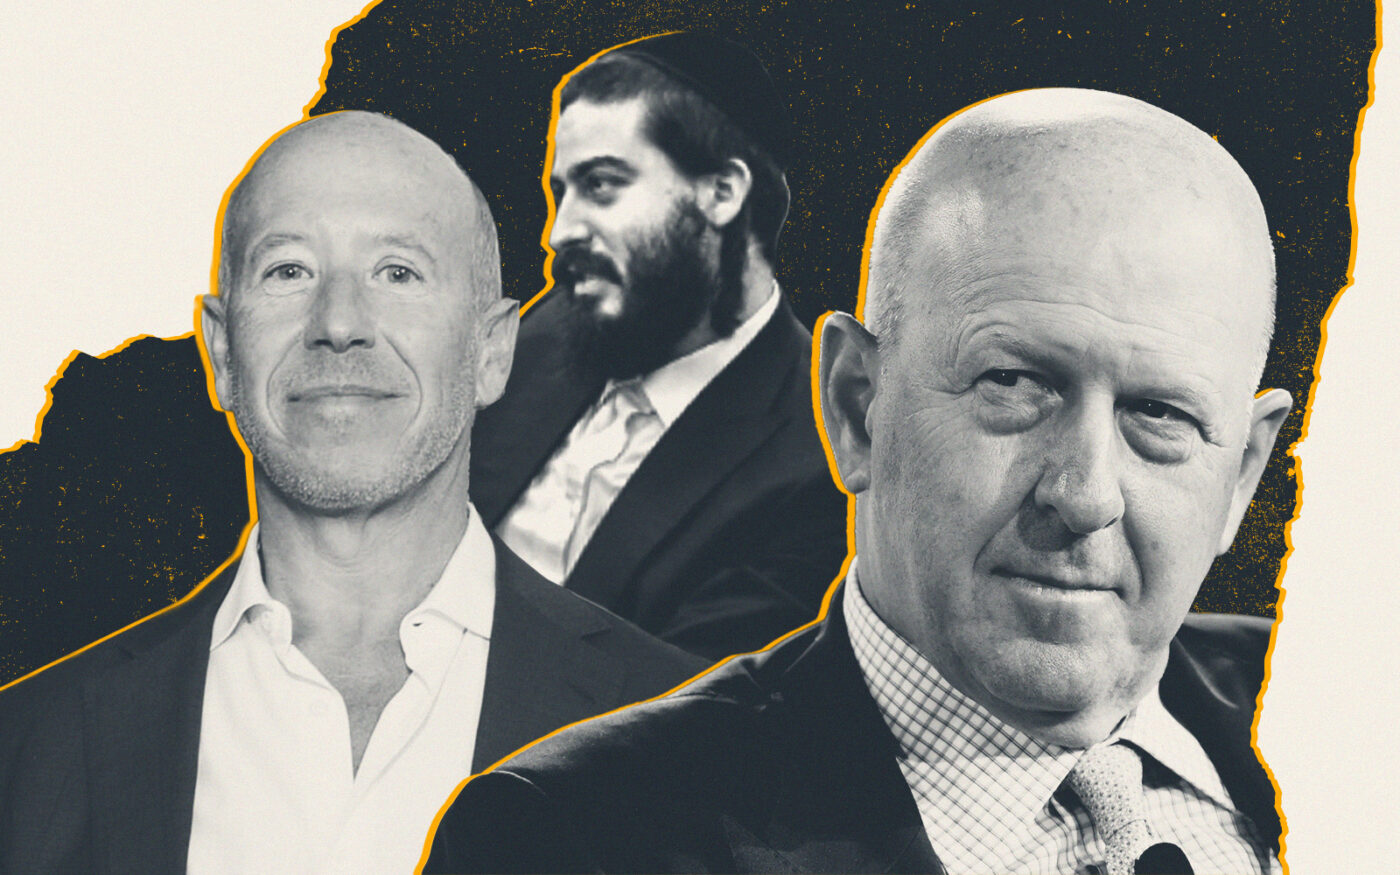 Starwood's Barry Sternlicht, Joel Schreiber and Goldman Sachs’s David Solomon